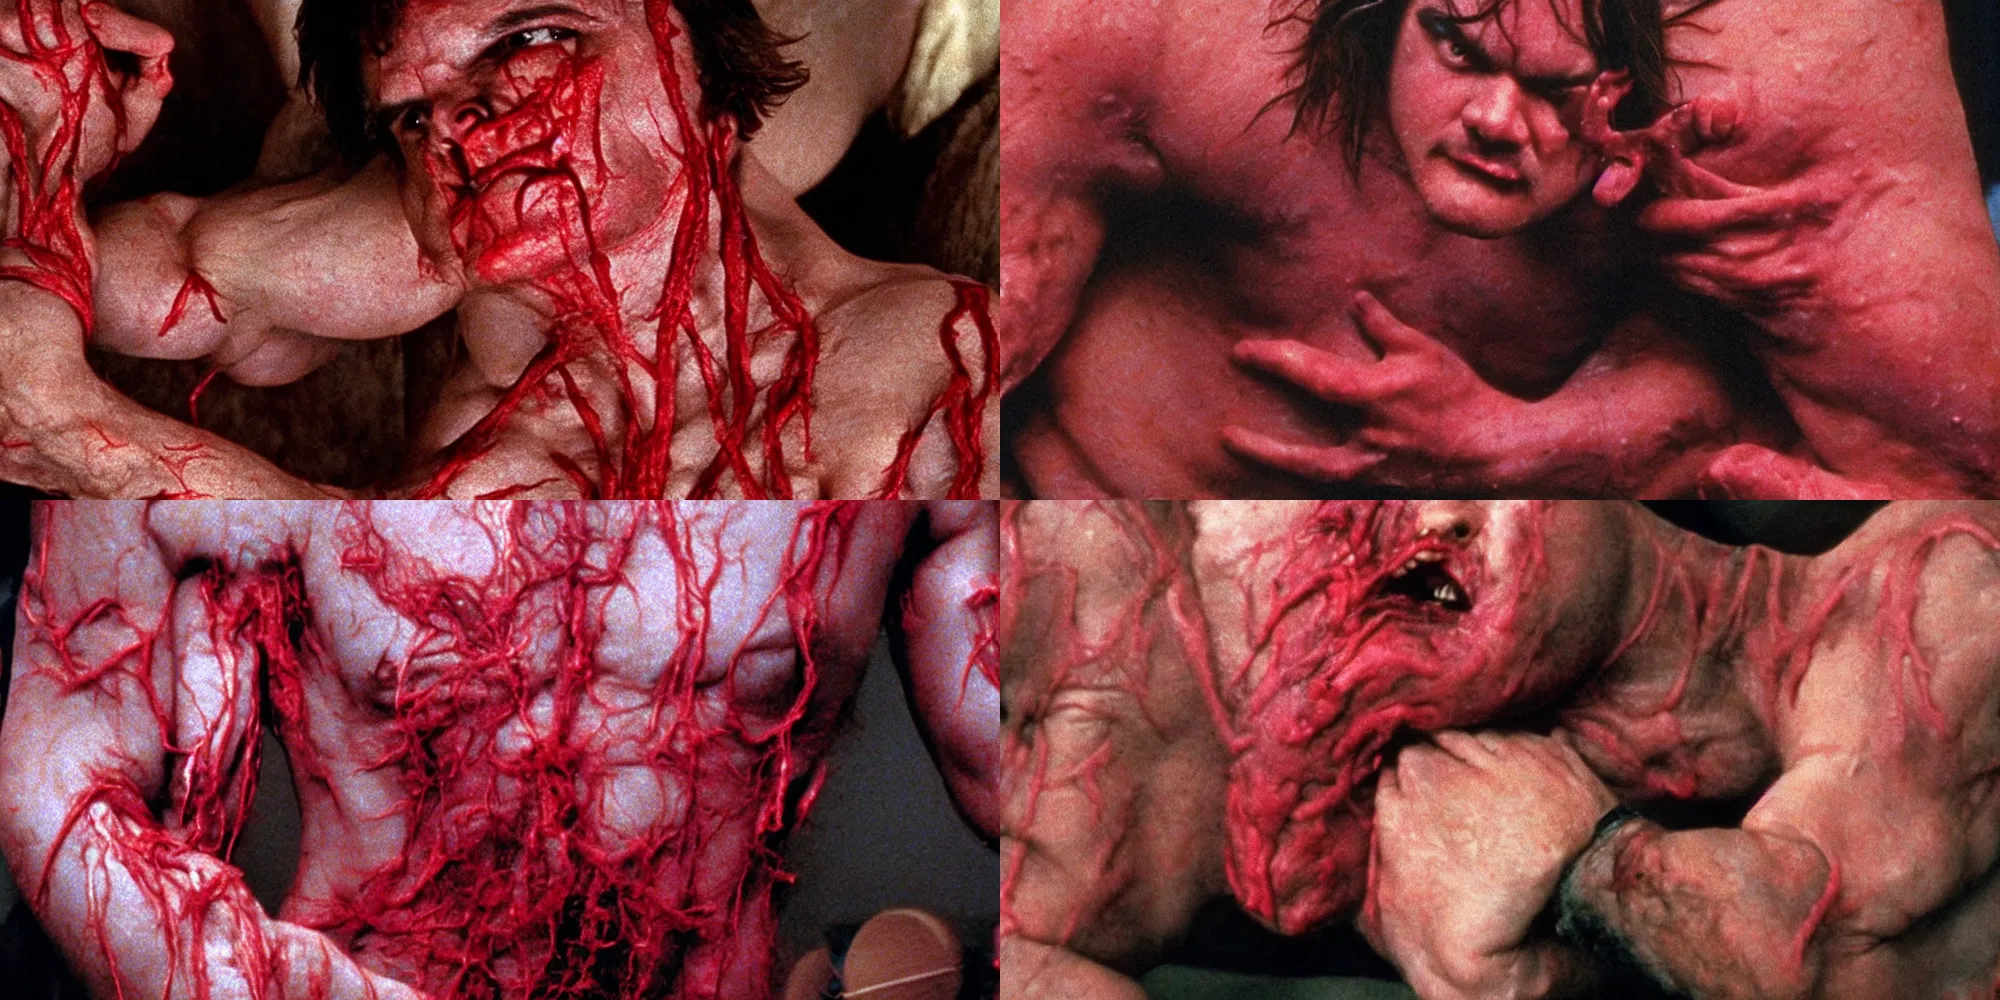 Prompt: jack black body horror directed by david cronenberg, limb mutations, swollen veins, red flesh strings, cinestill 8 0 0 t, 1 9 8 0 s movie still, film grain